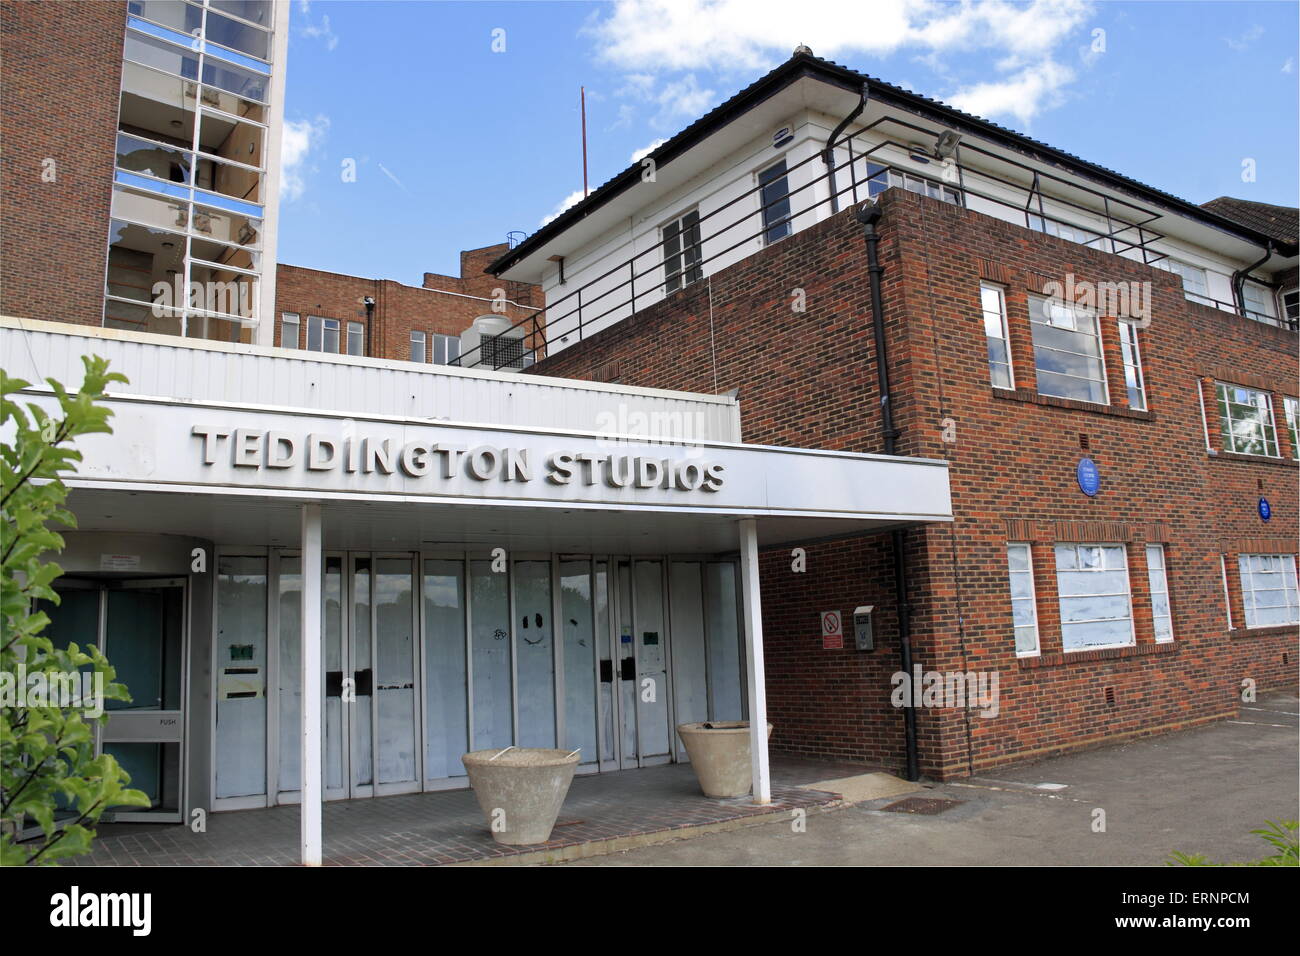 Teddington Studios. L'été démoli en 2016 pour faire place à la reconstruction. L'Angleterre, Grande-Bretagne, Royaume-Uni, UK, Europe Banque D'Images